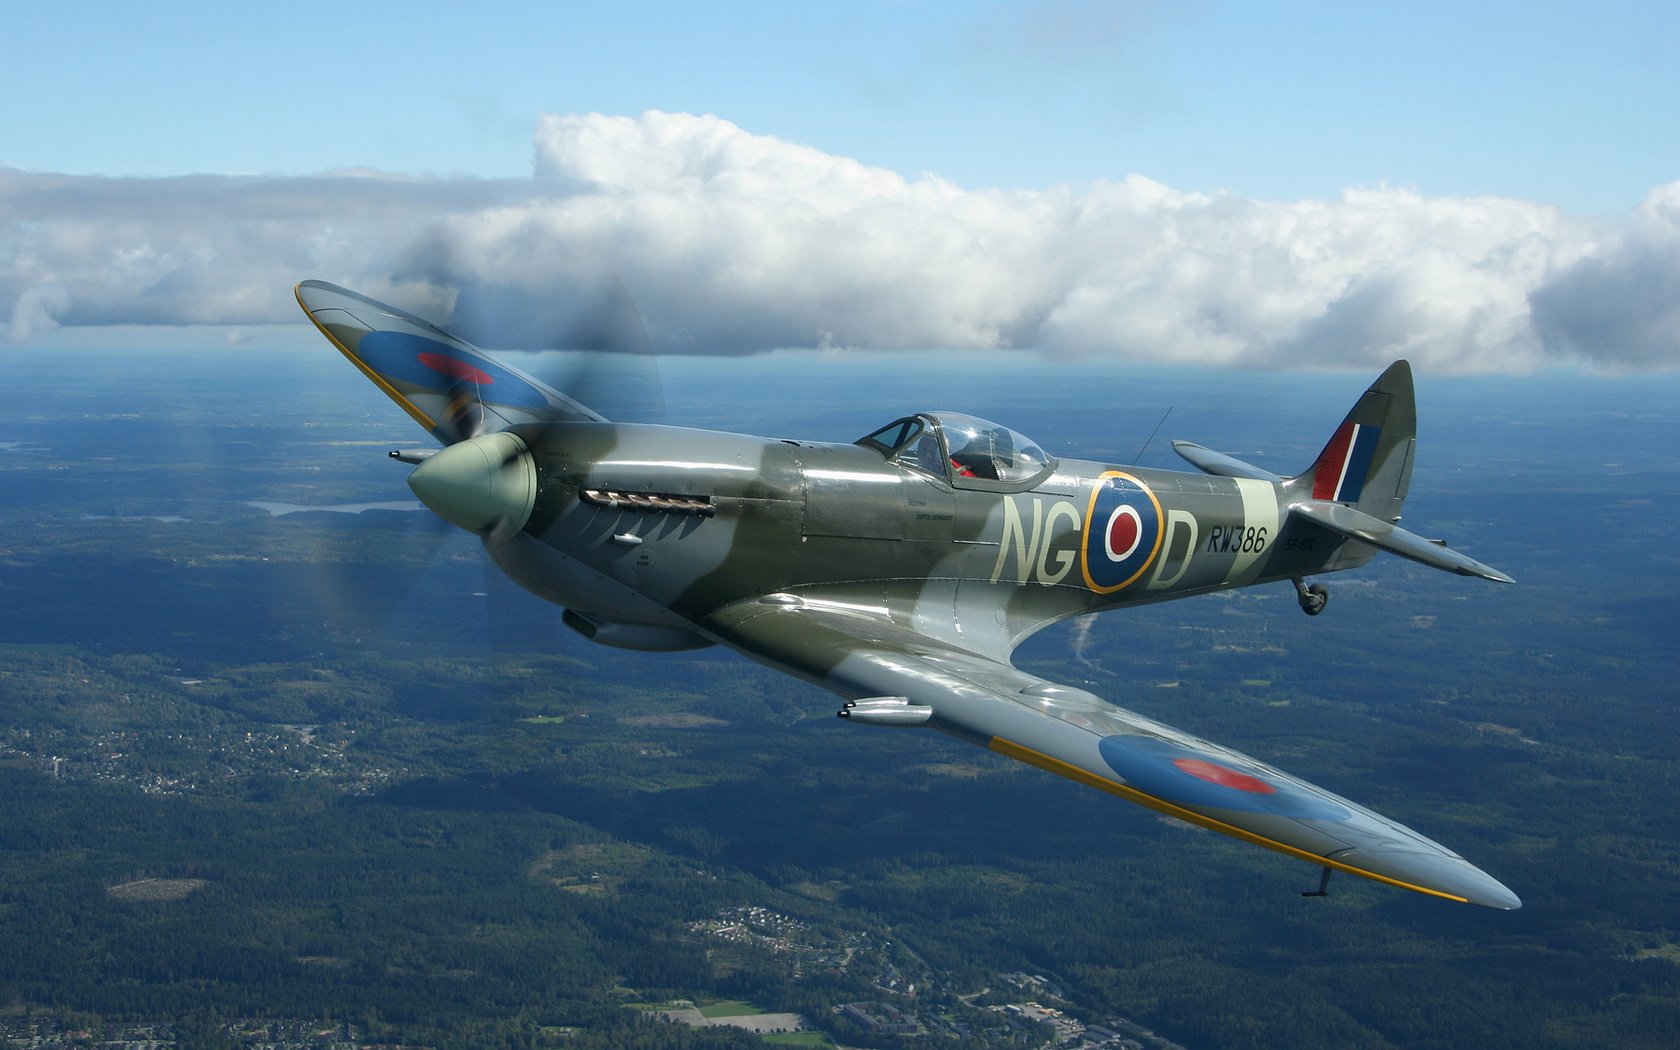 Spitfire Wallpaper HD Supermarine Spitfire aircraft plane clouds